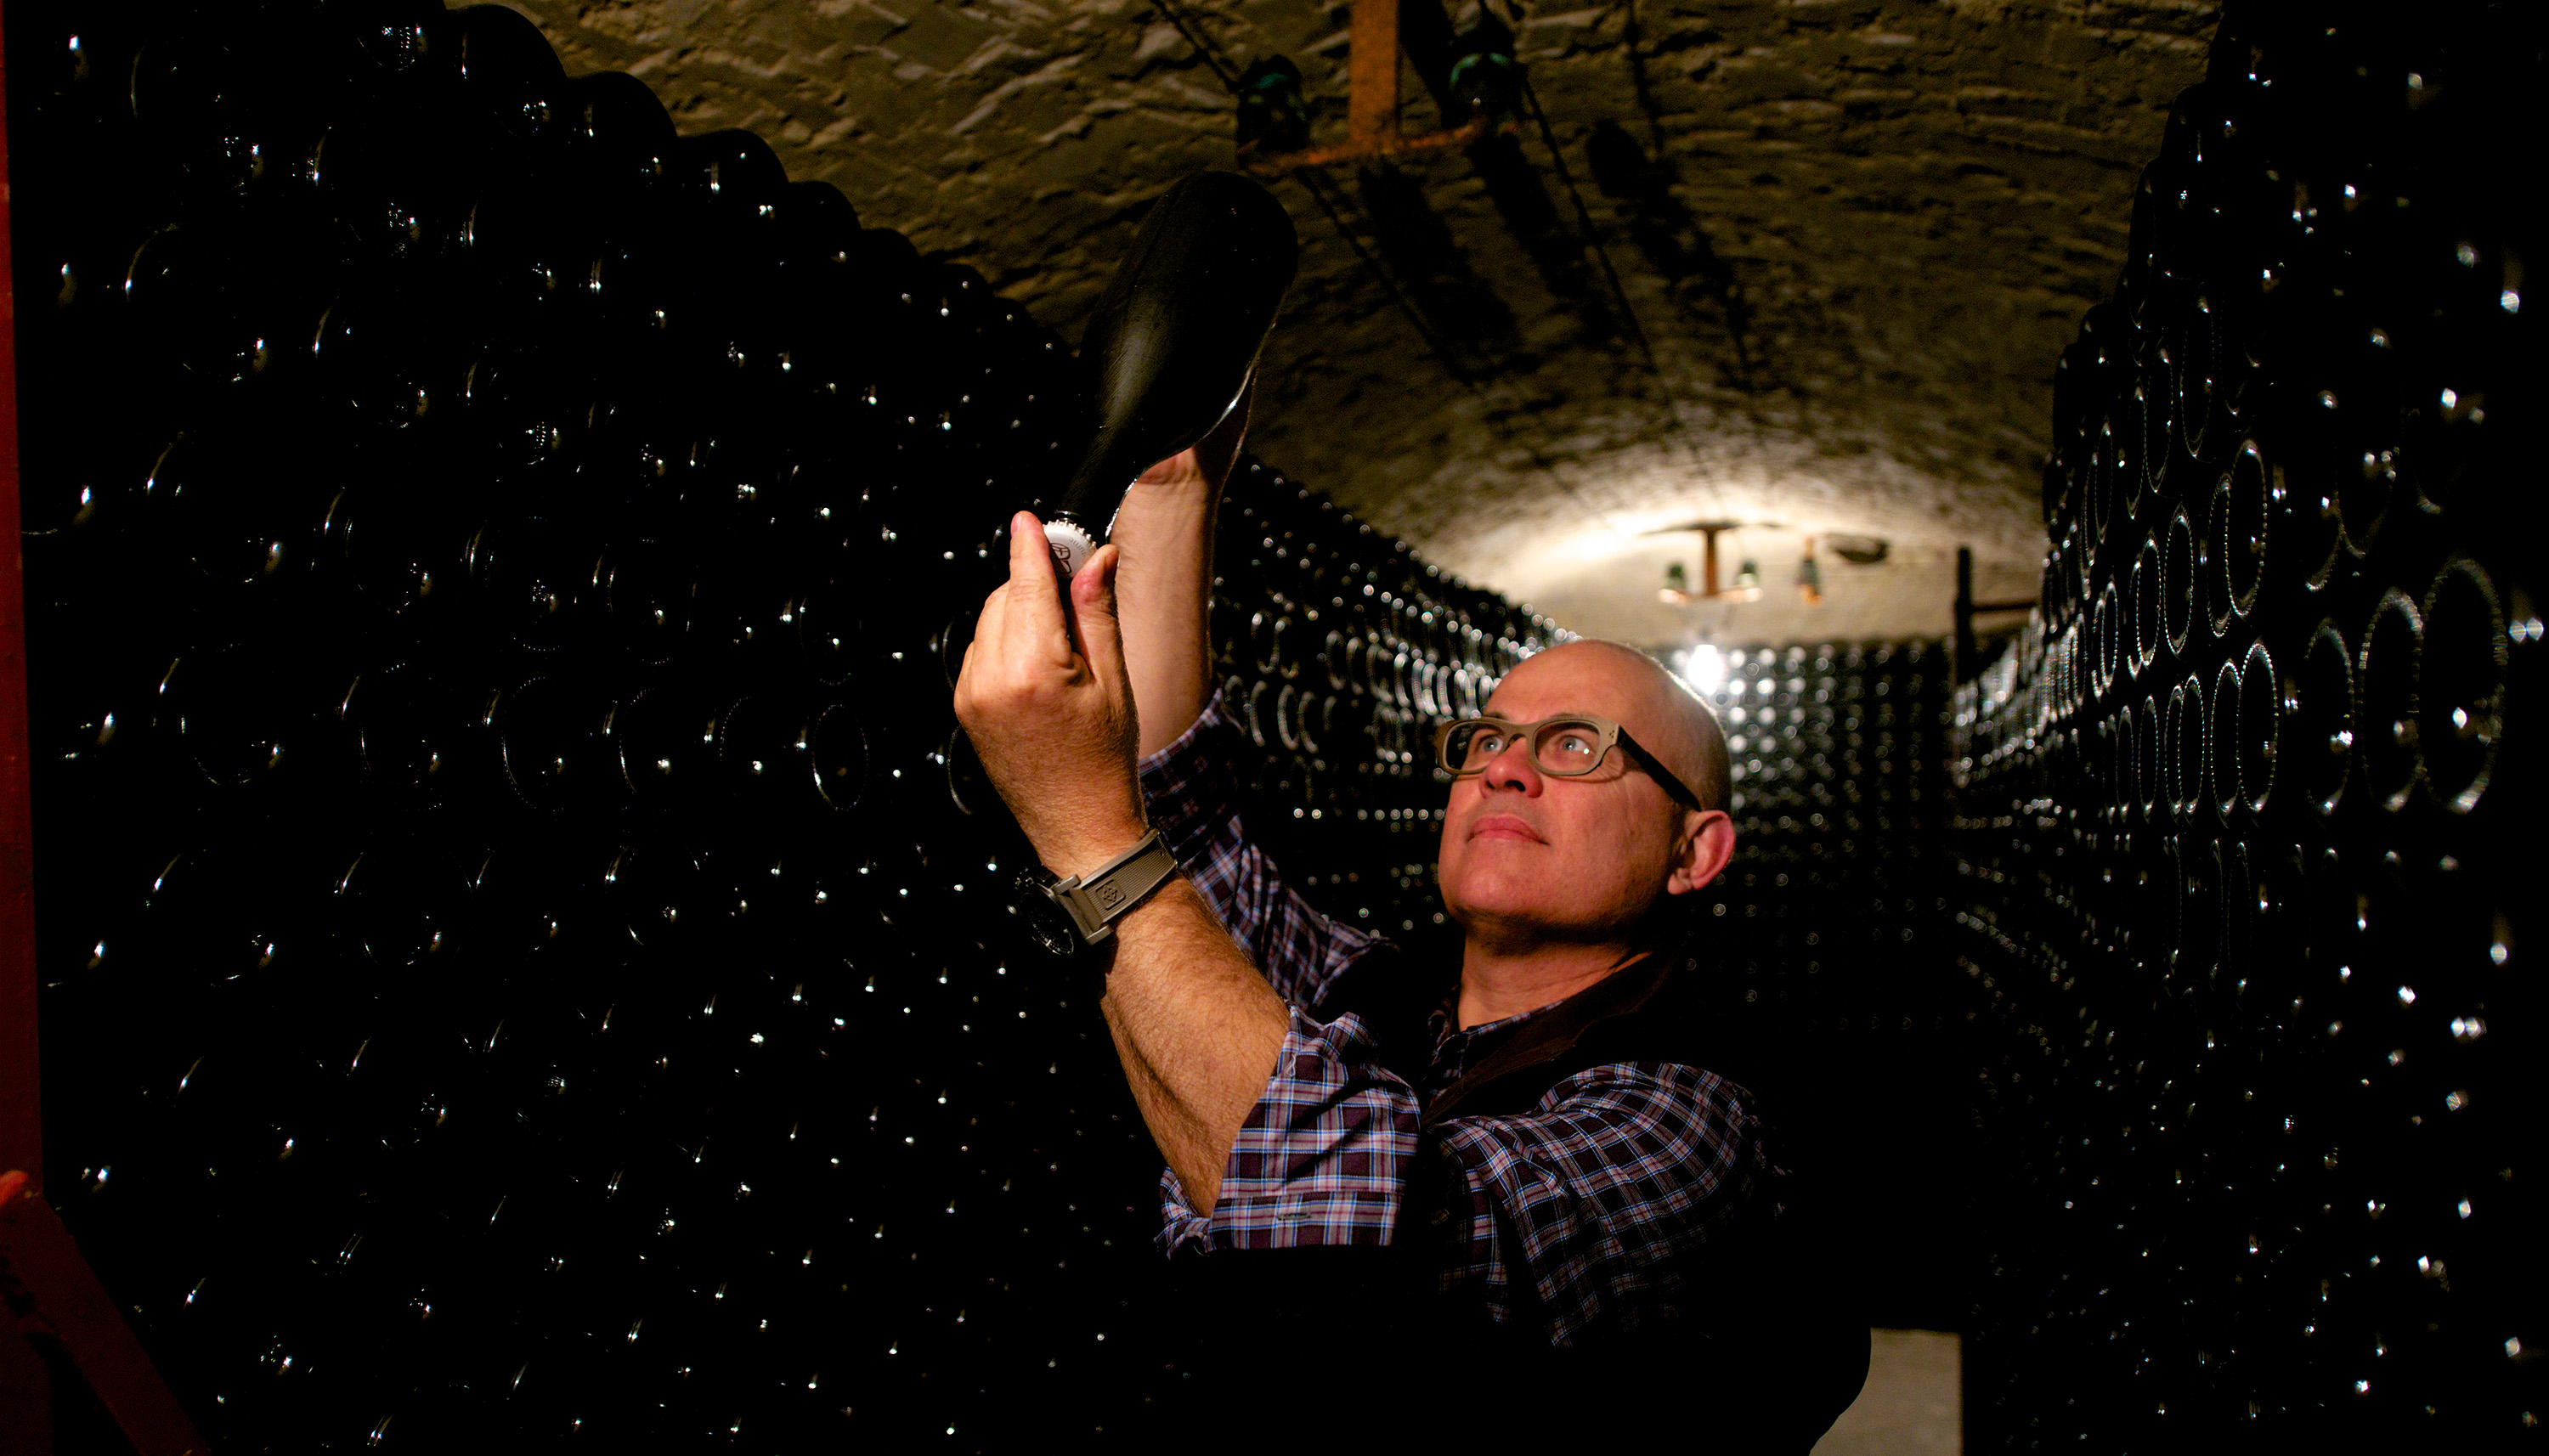 Eric Rodez begutachtet eine Flasche Champagner im Keller